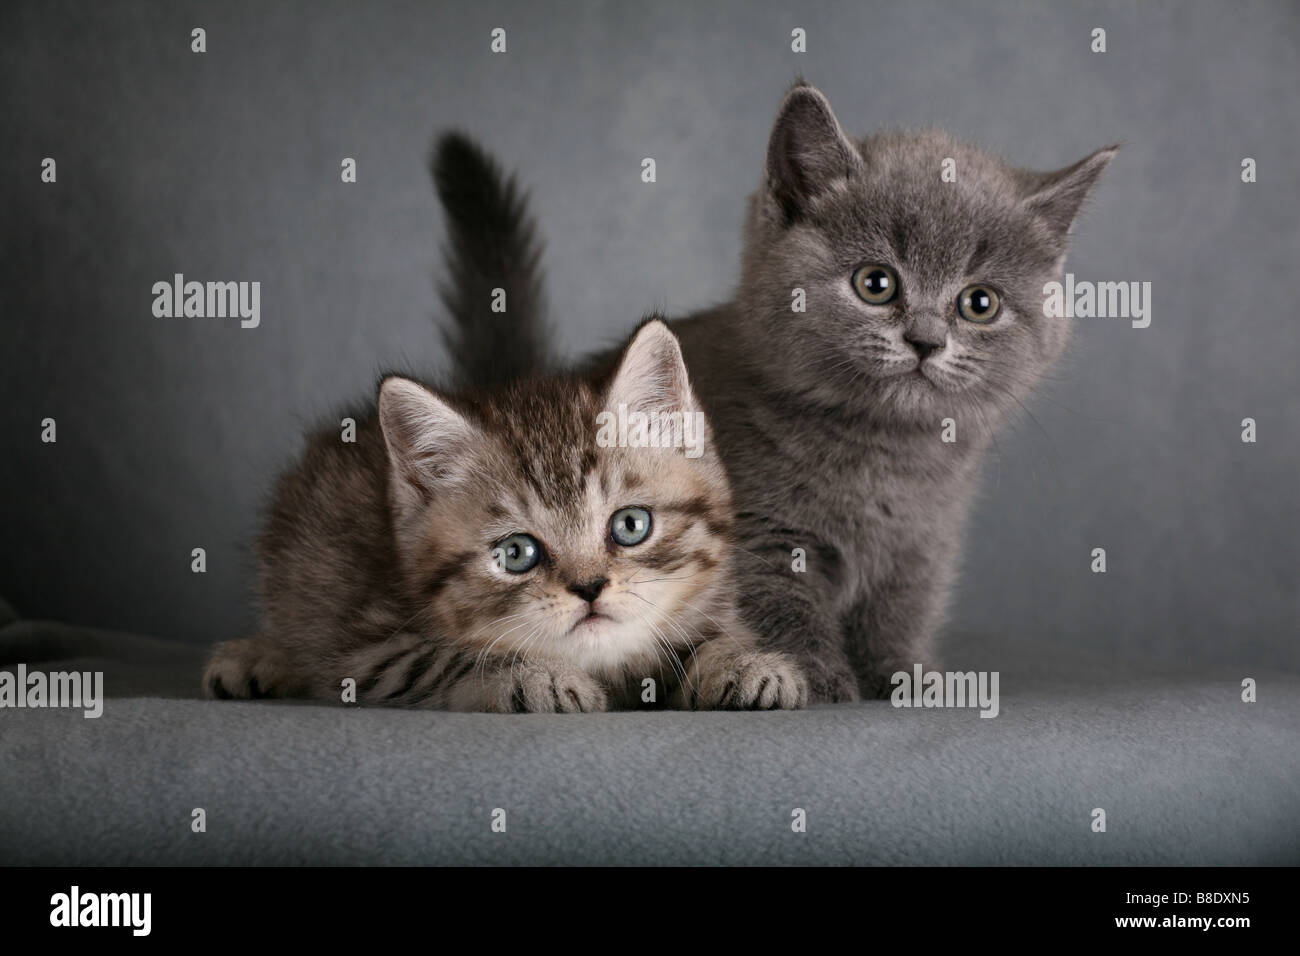 Two  British Shorthair kittens. Stock Photo